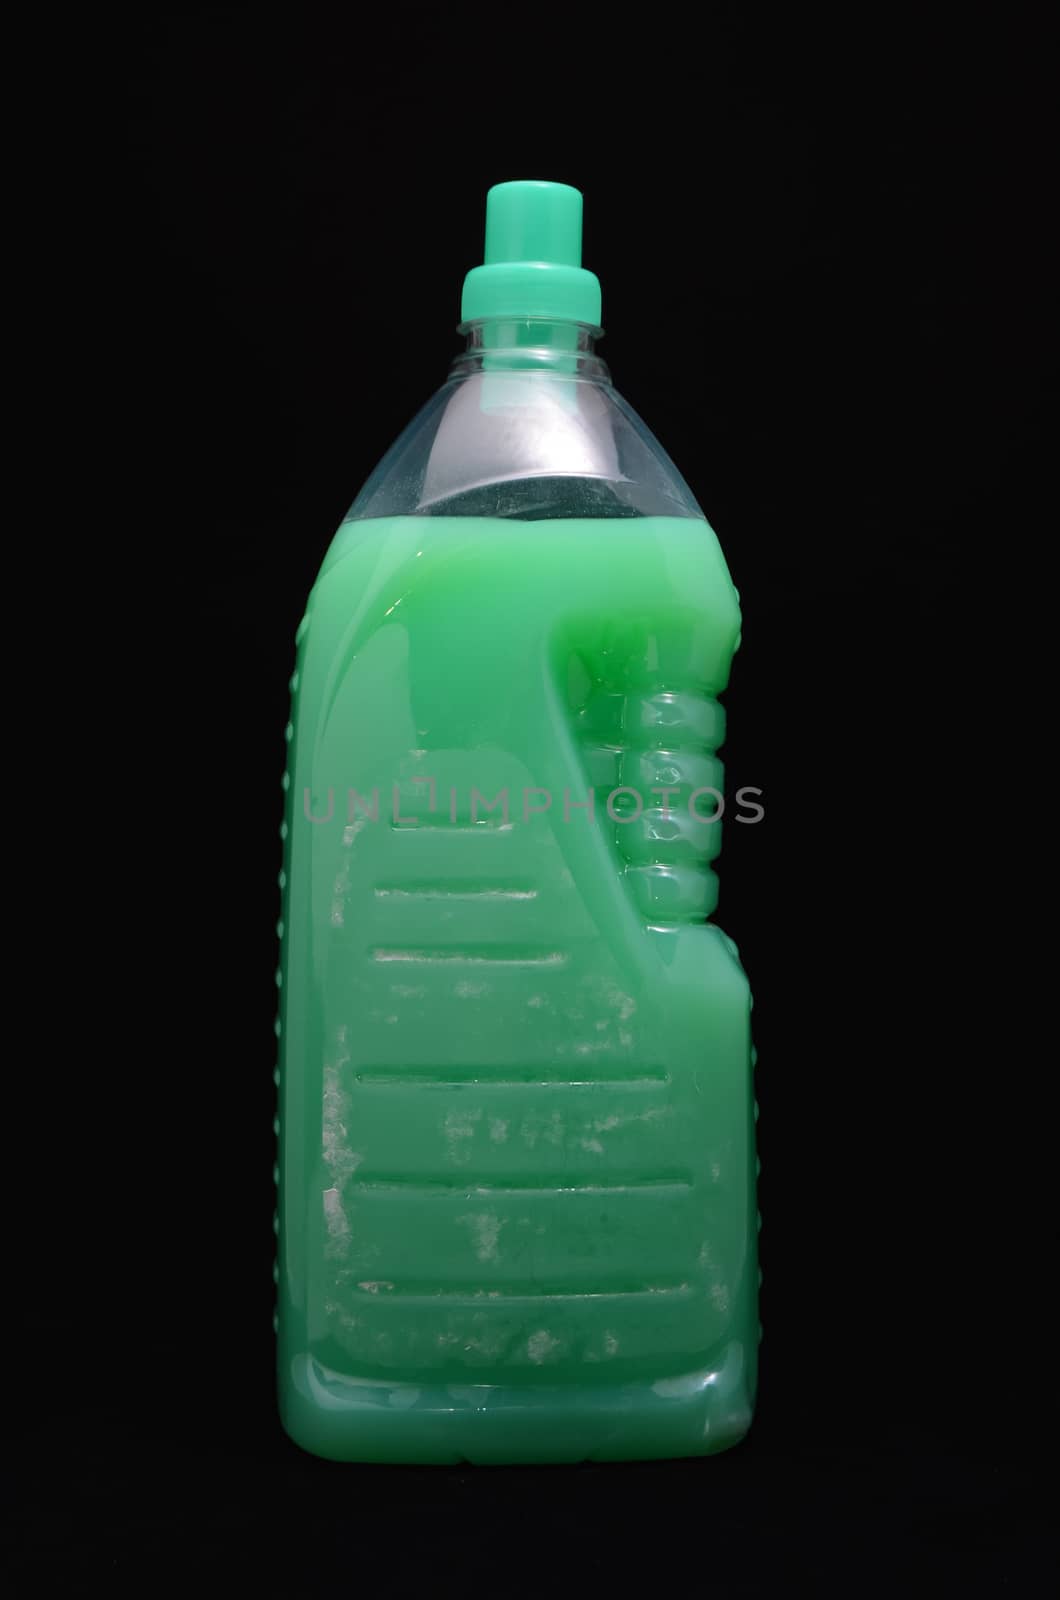 Green Shampoo Bottle by underworld